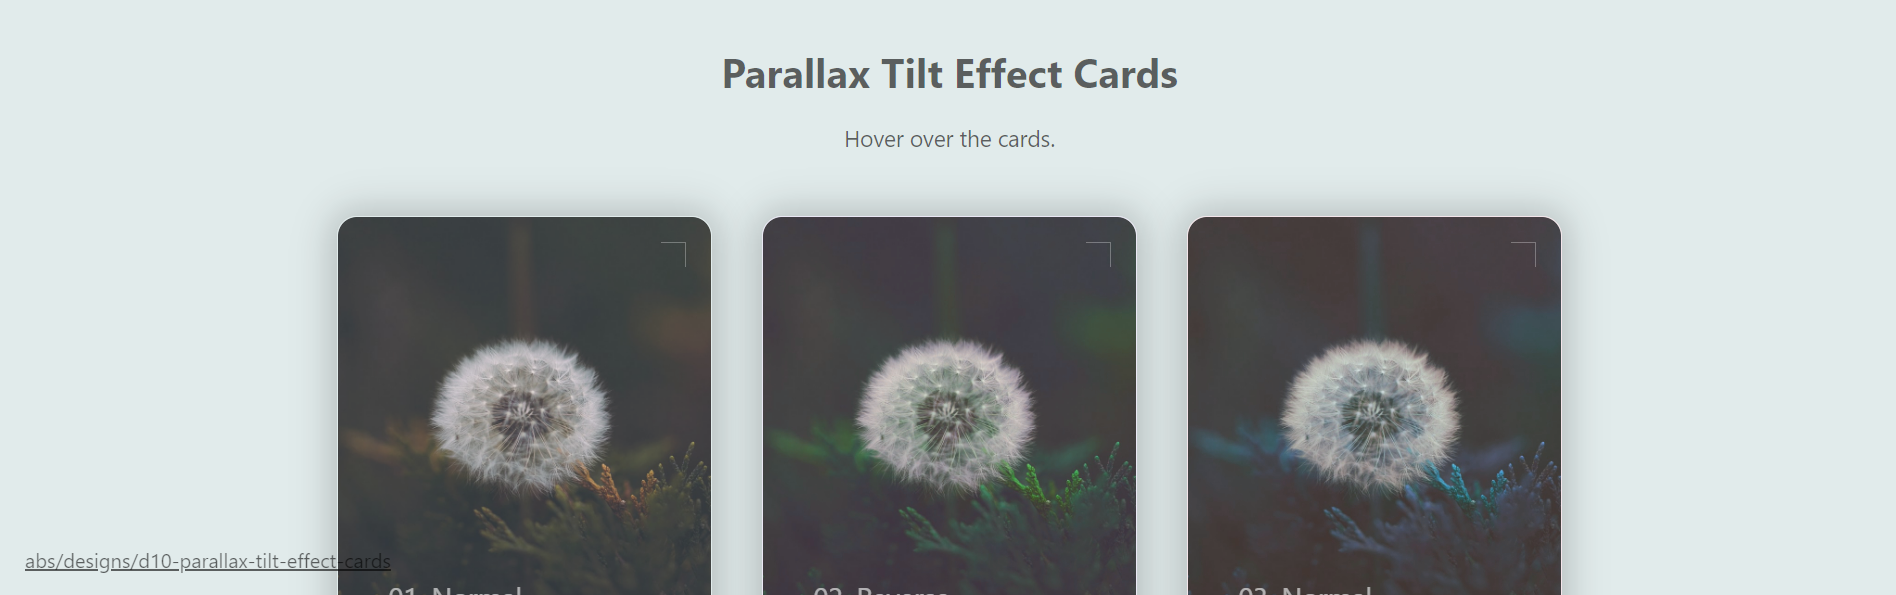 Parallax Tilt Effect Cards